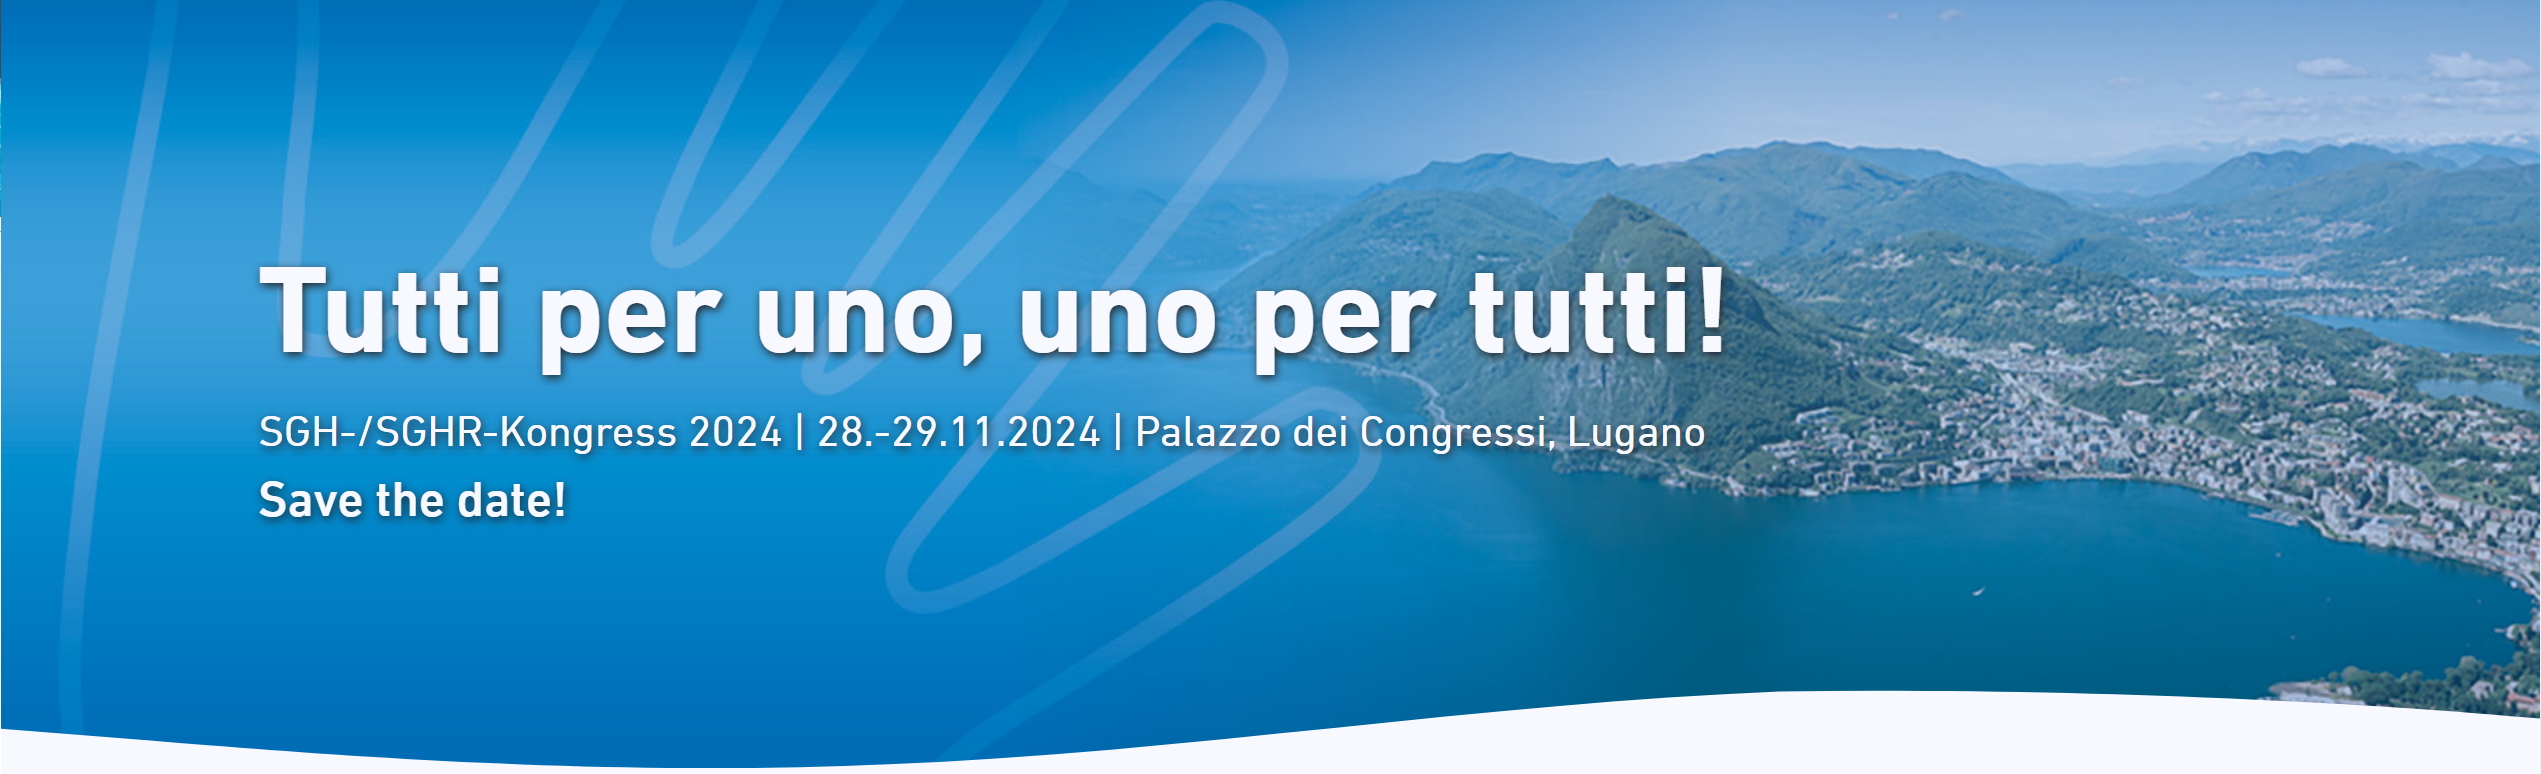 SGH-/SGHR-Kongress 2024 | 28.-29.11.2024 | Palazzo dei Congressi, Lugano